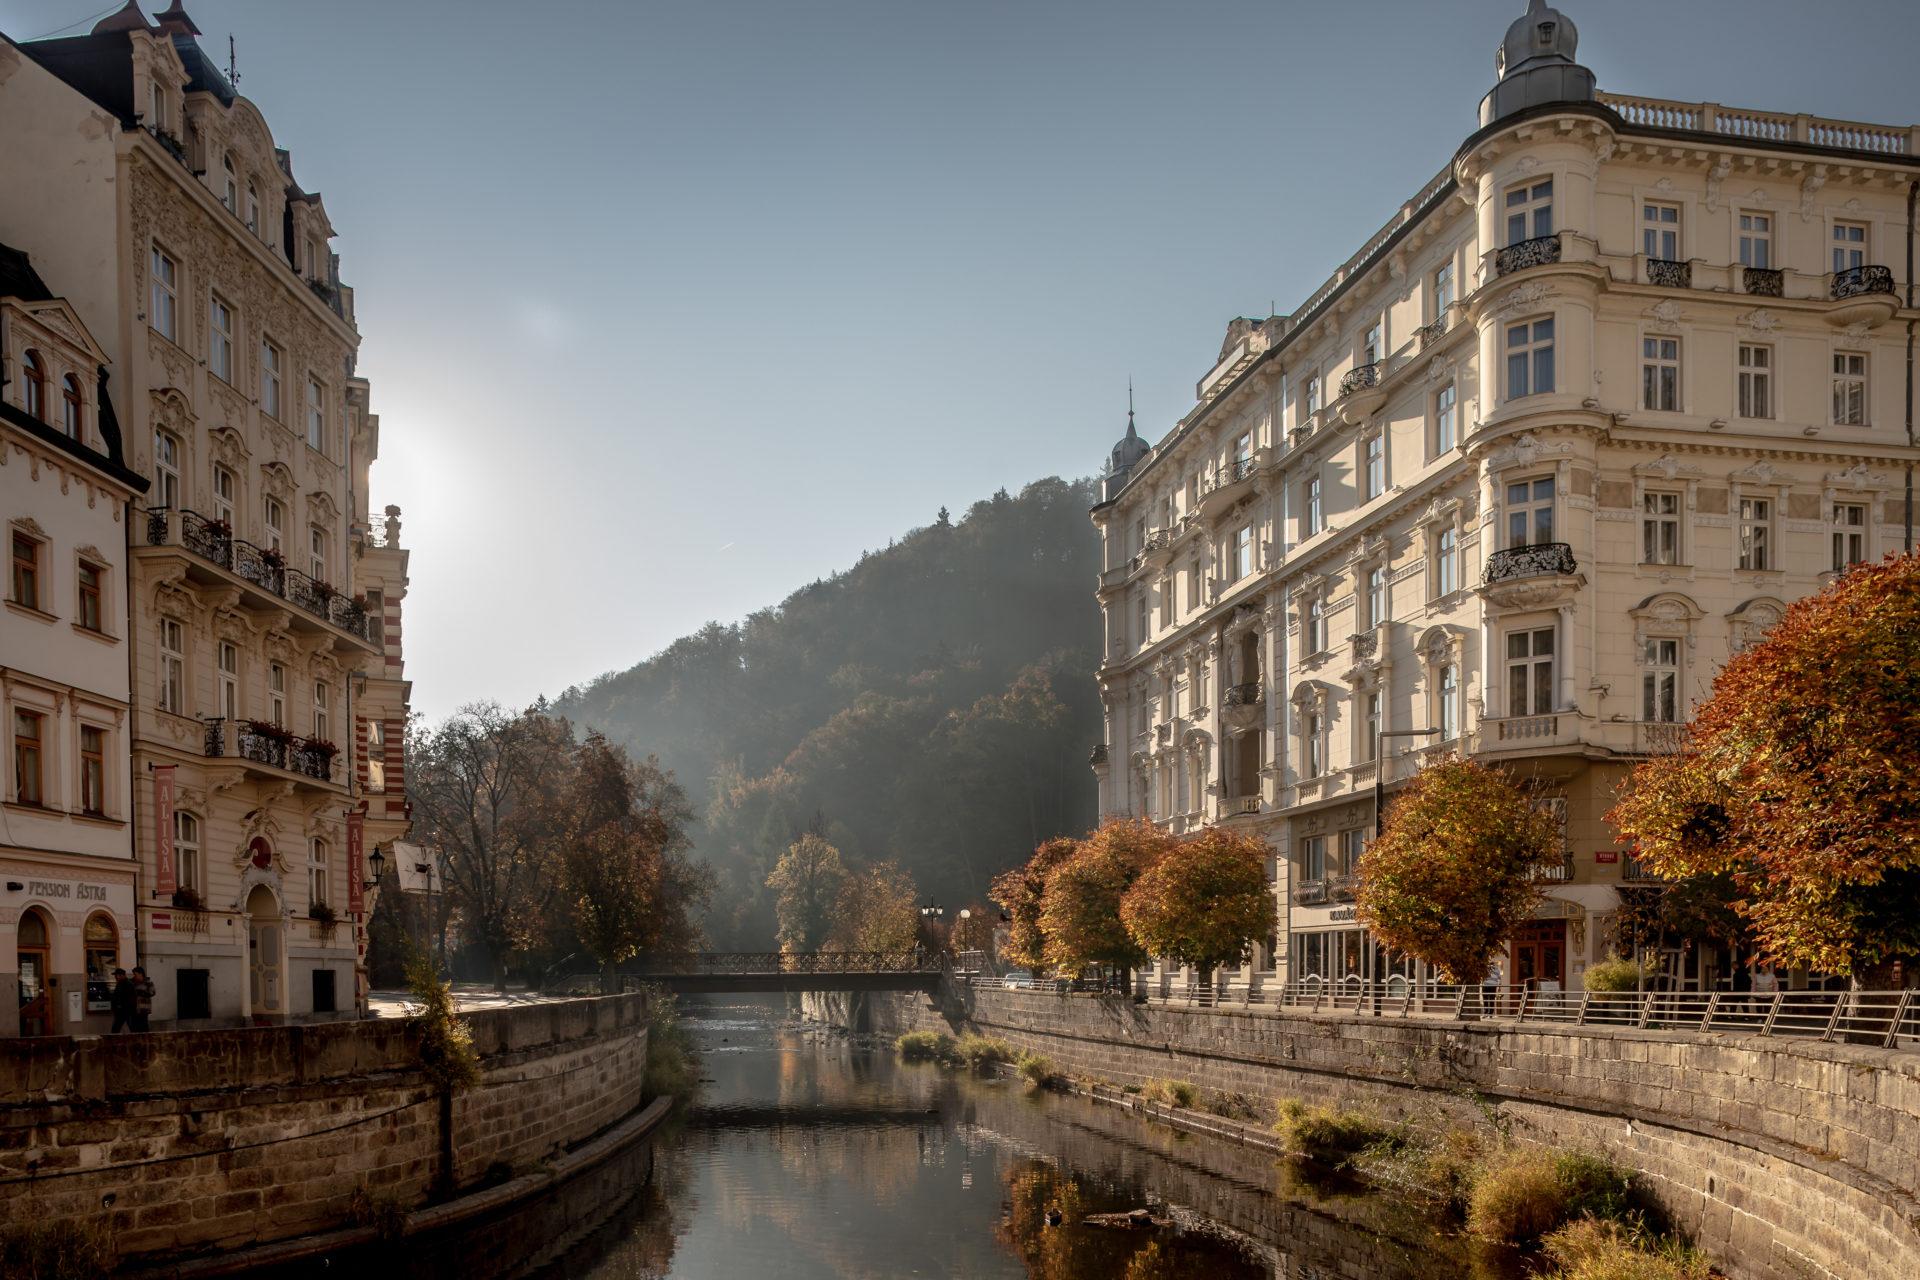  Karlovy Vary republica tcheca